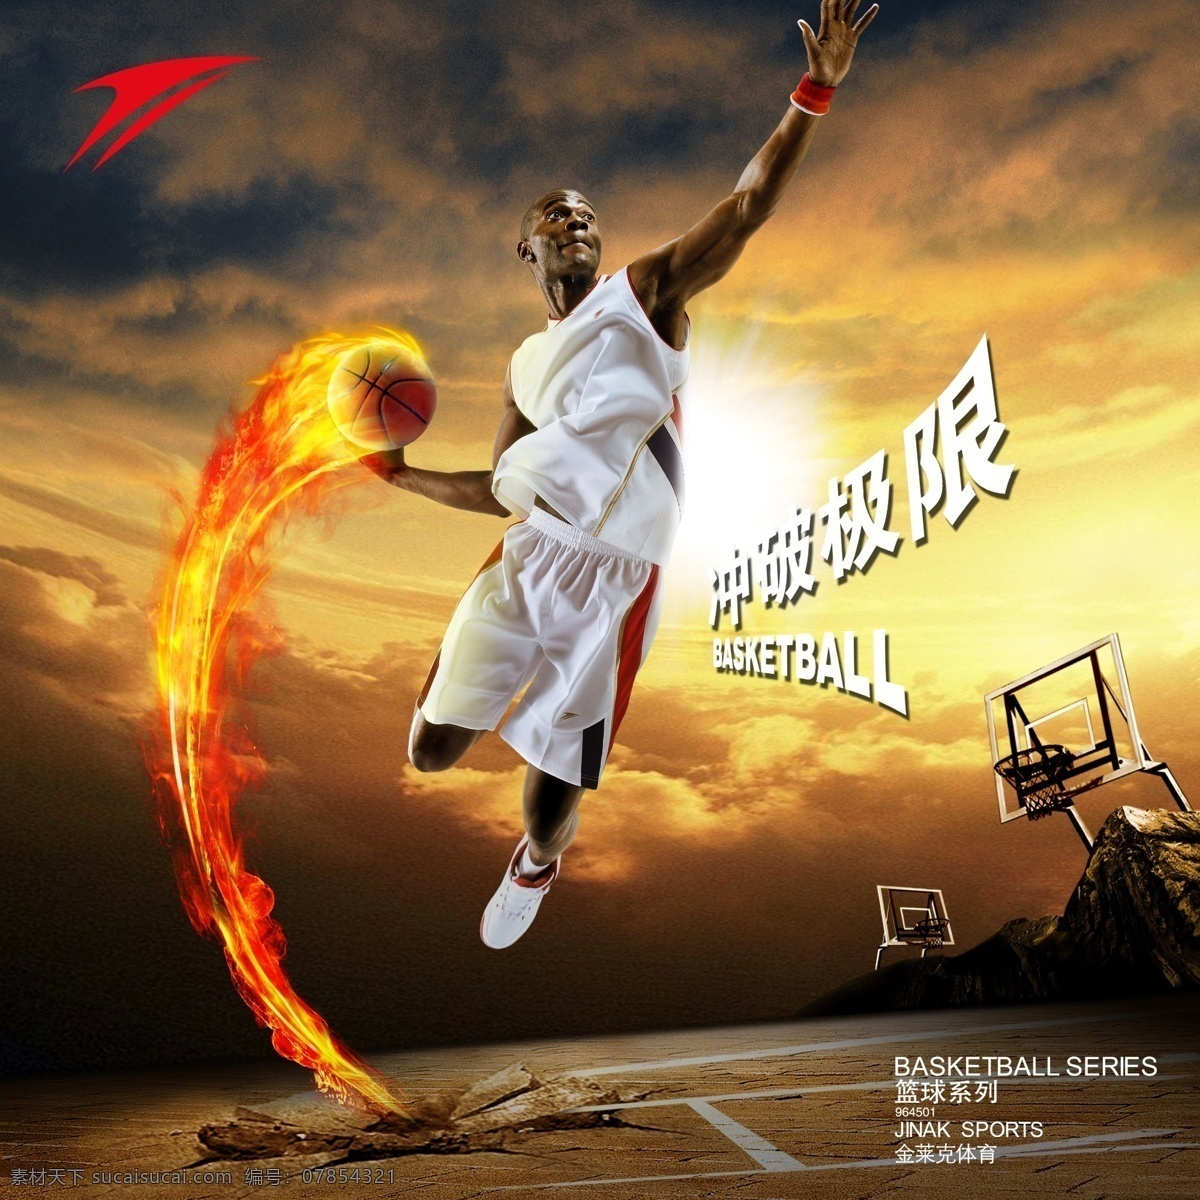 金莱克体育 篮球系列 篮球火 冲破极限 金莱克标志 篮球运动员 篮球场 广告设计模板 源文件